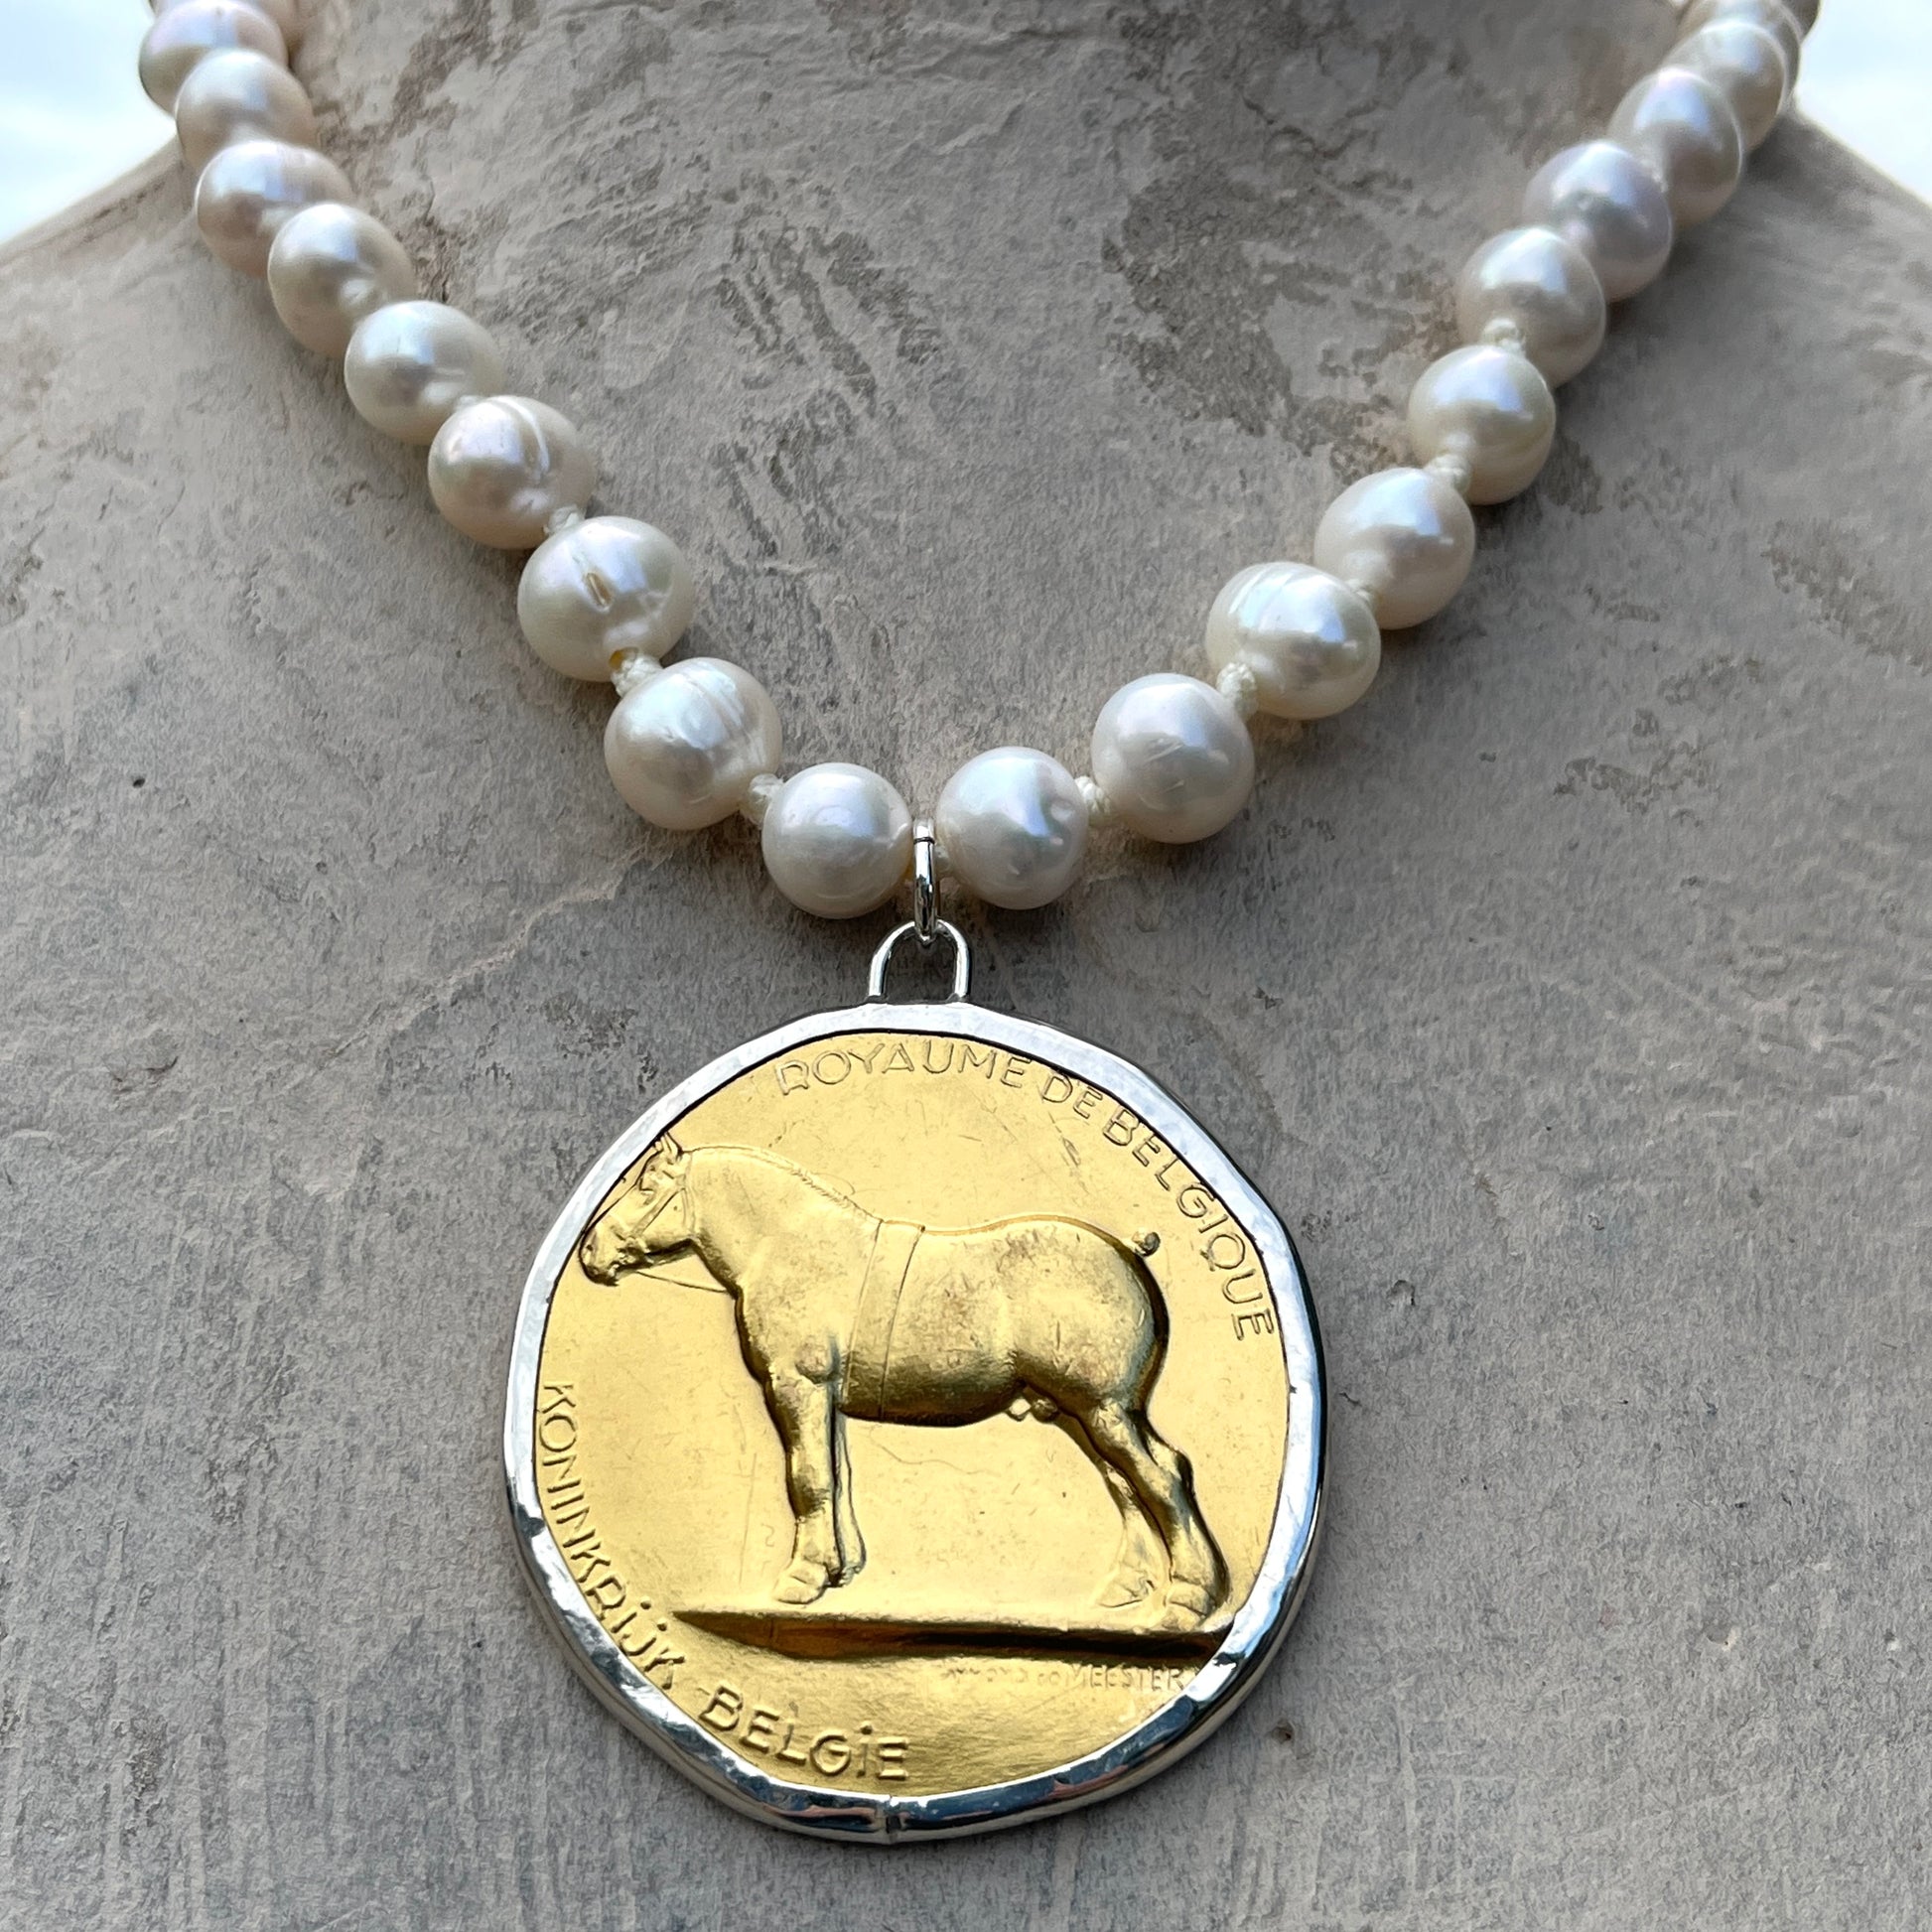 Gilded Belgian Medal Necklace